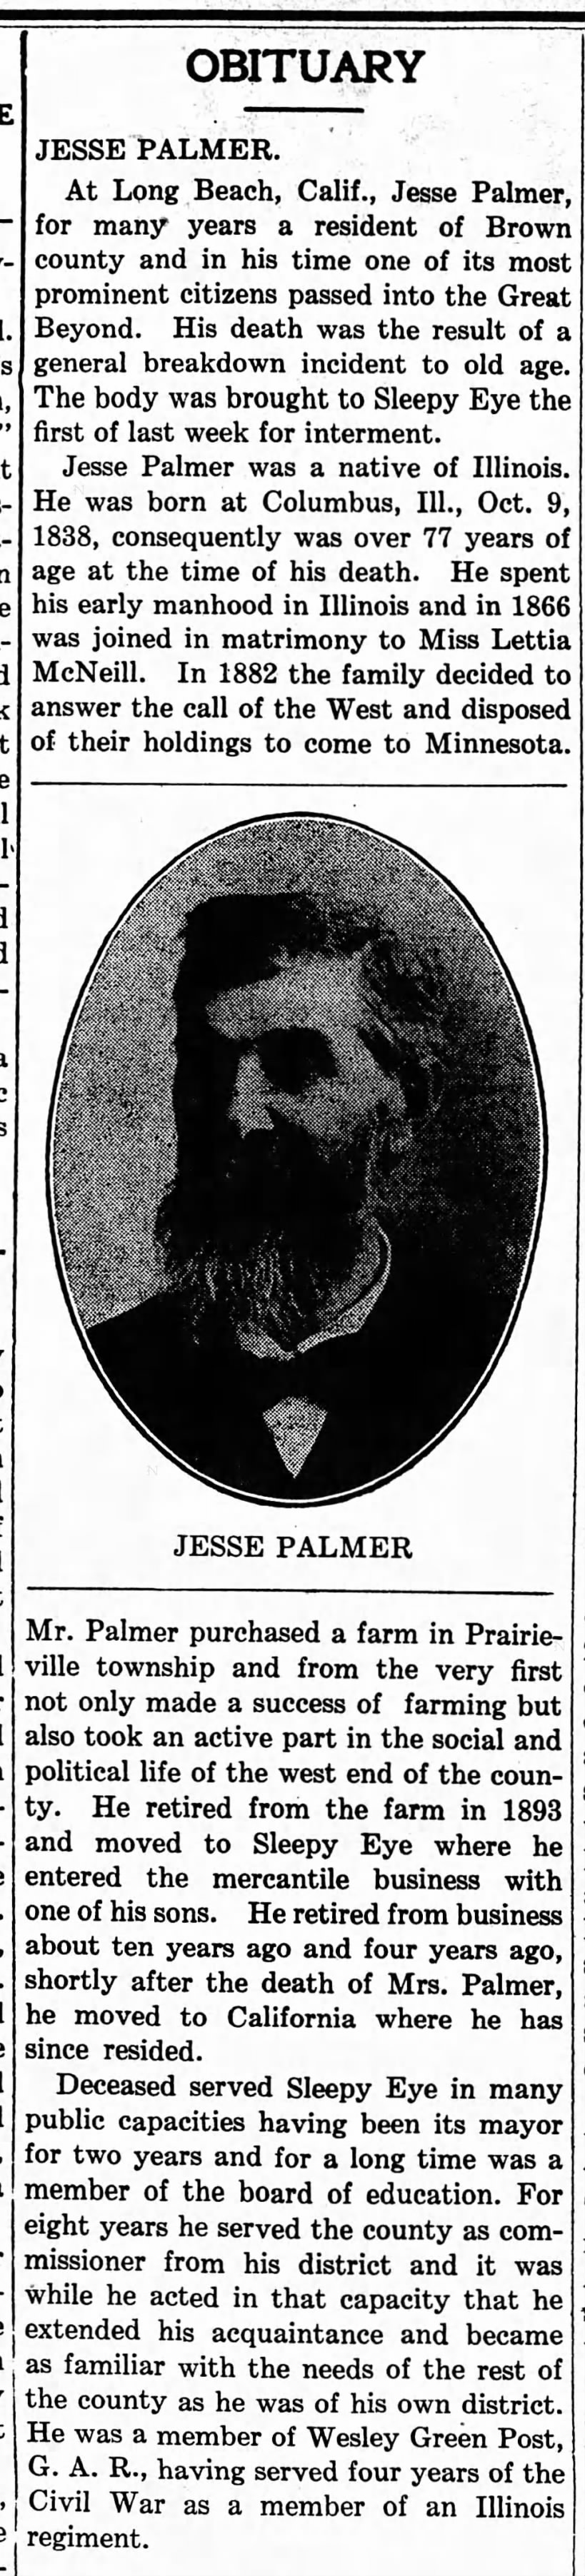 Jesse Palmer Obituary Primary